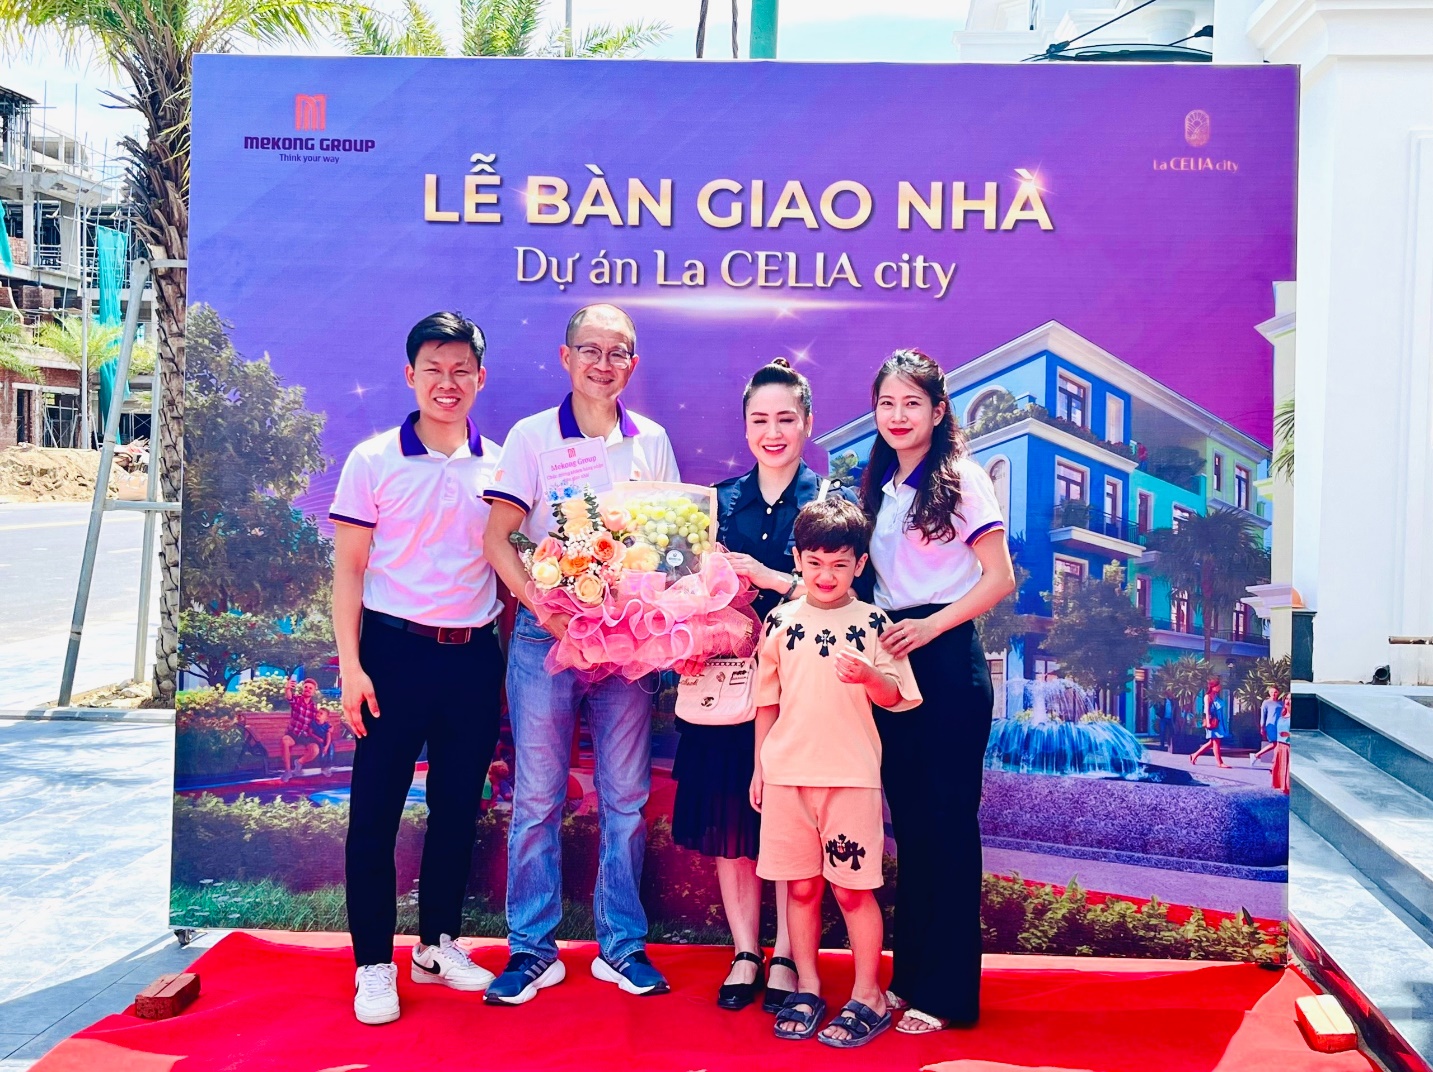 Mekong Group biến giấc mơ sở hữu nhà bên biển Bảo Ninh thành sự thật - Ảnh 1.